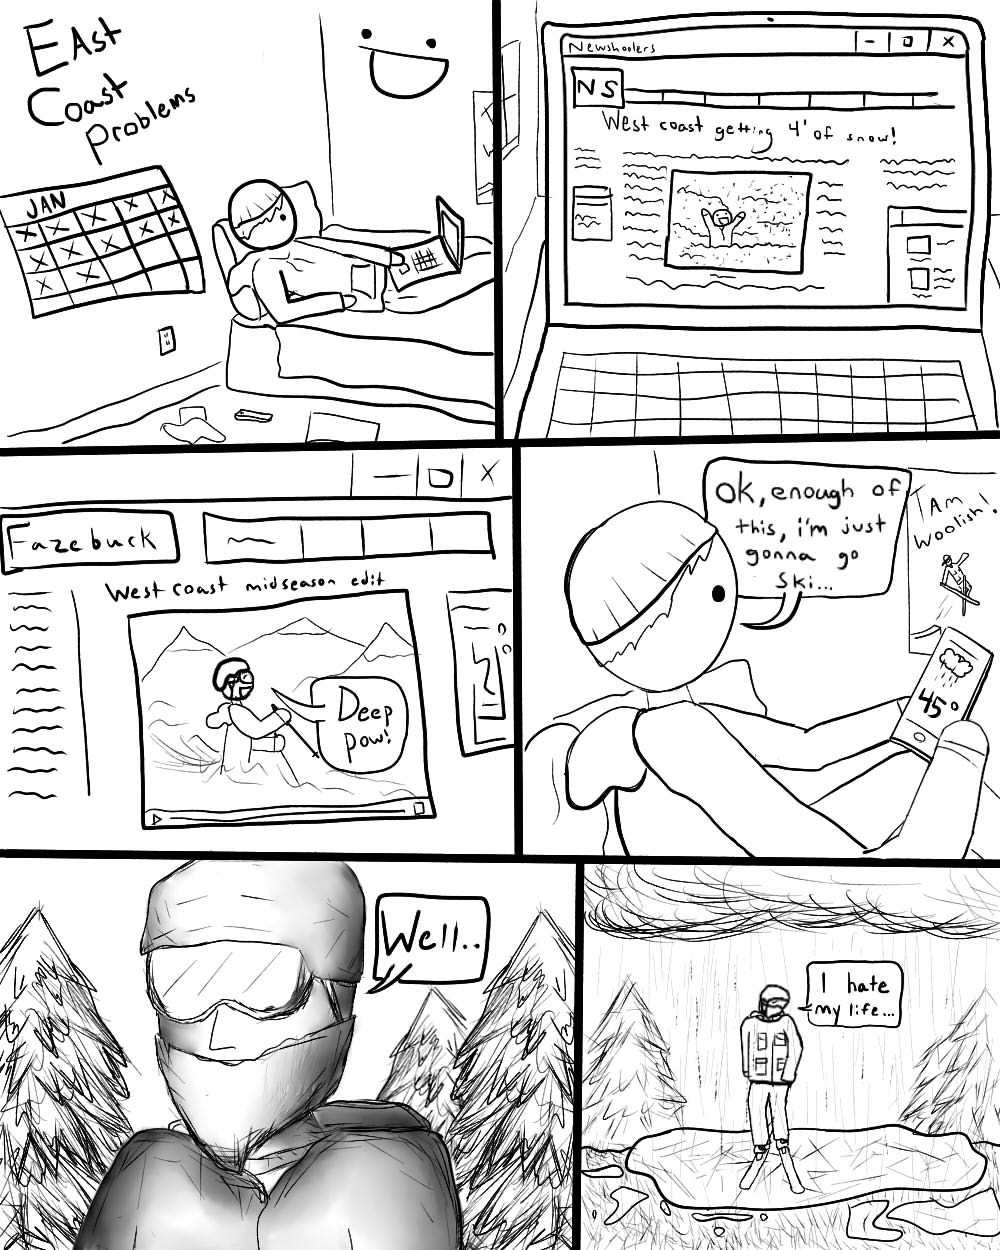 Skiing comic 2